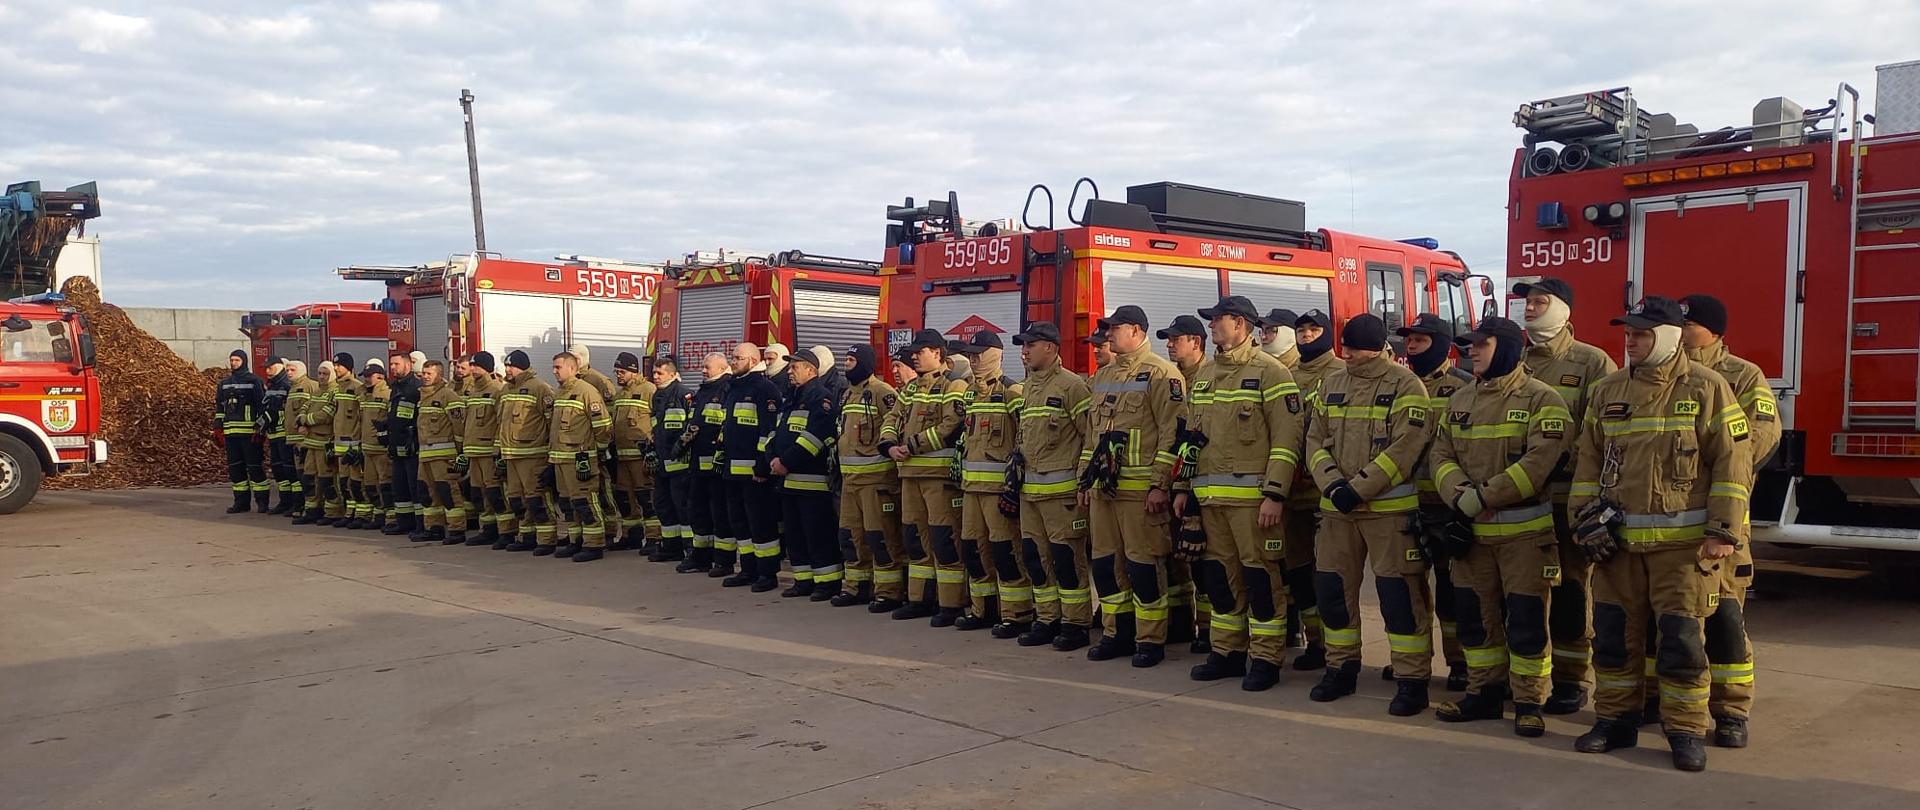 Zdjęcie przedstawia strażaków biorących udział w ćwiczeniach- warsztatach